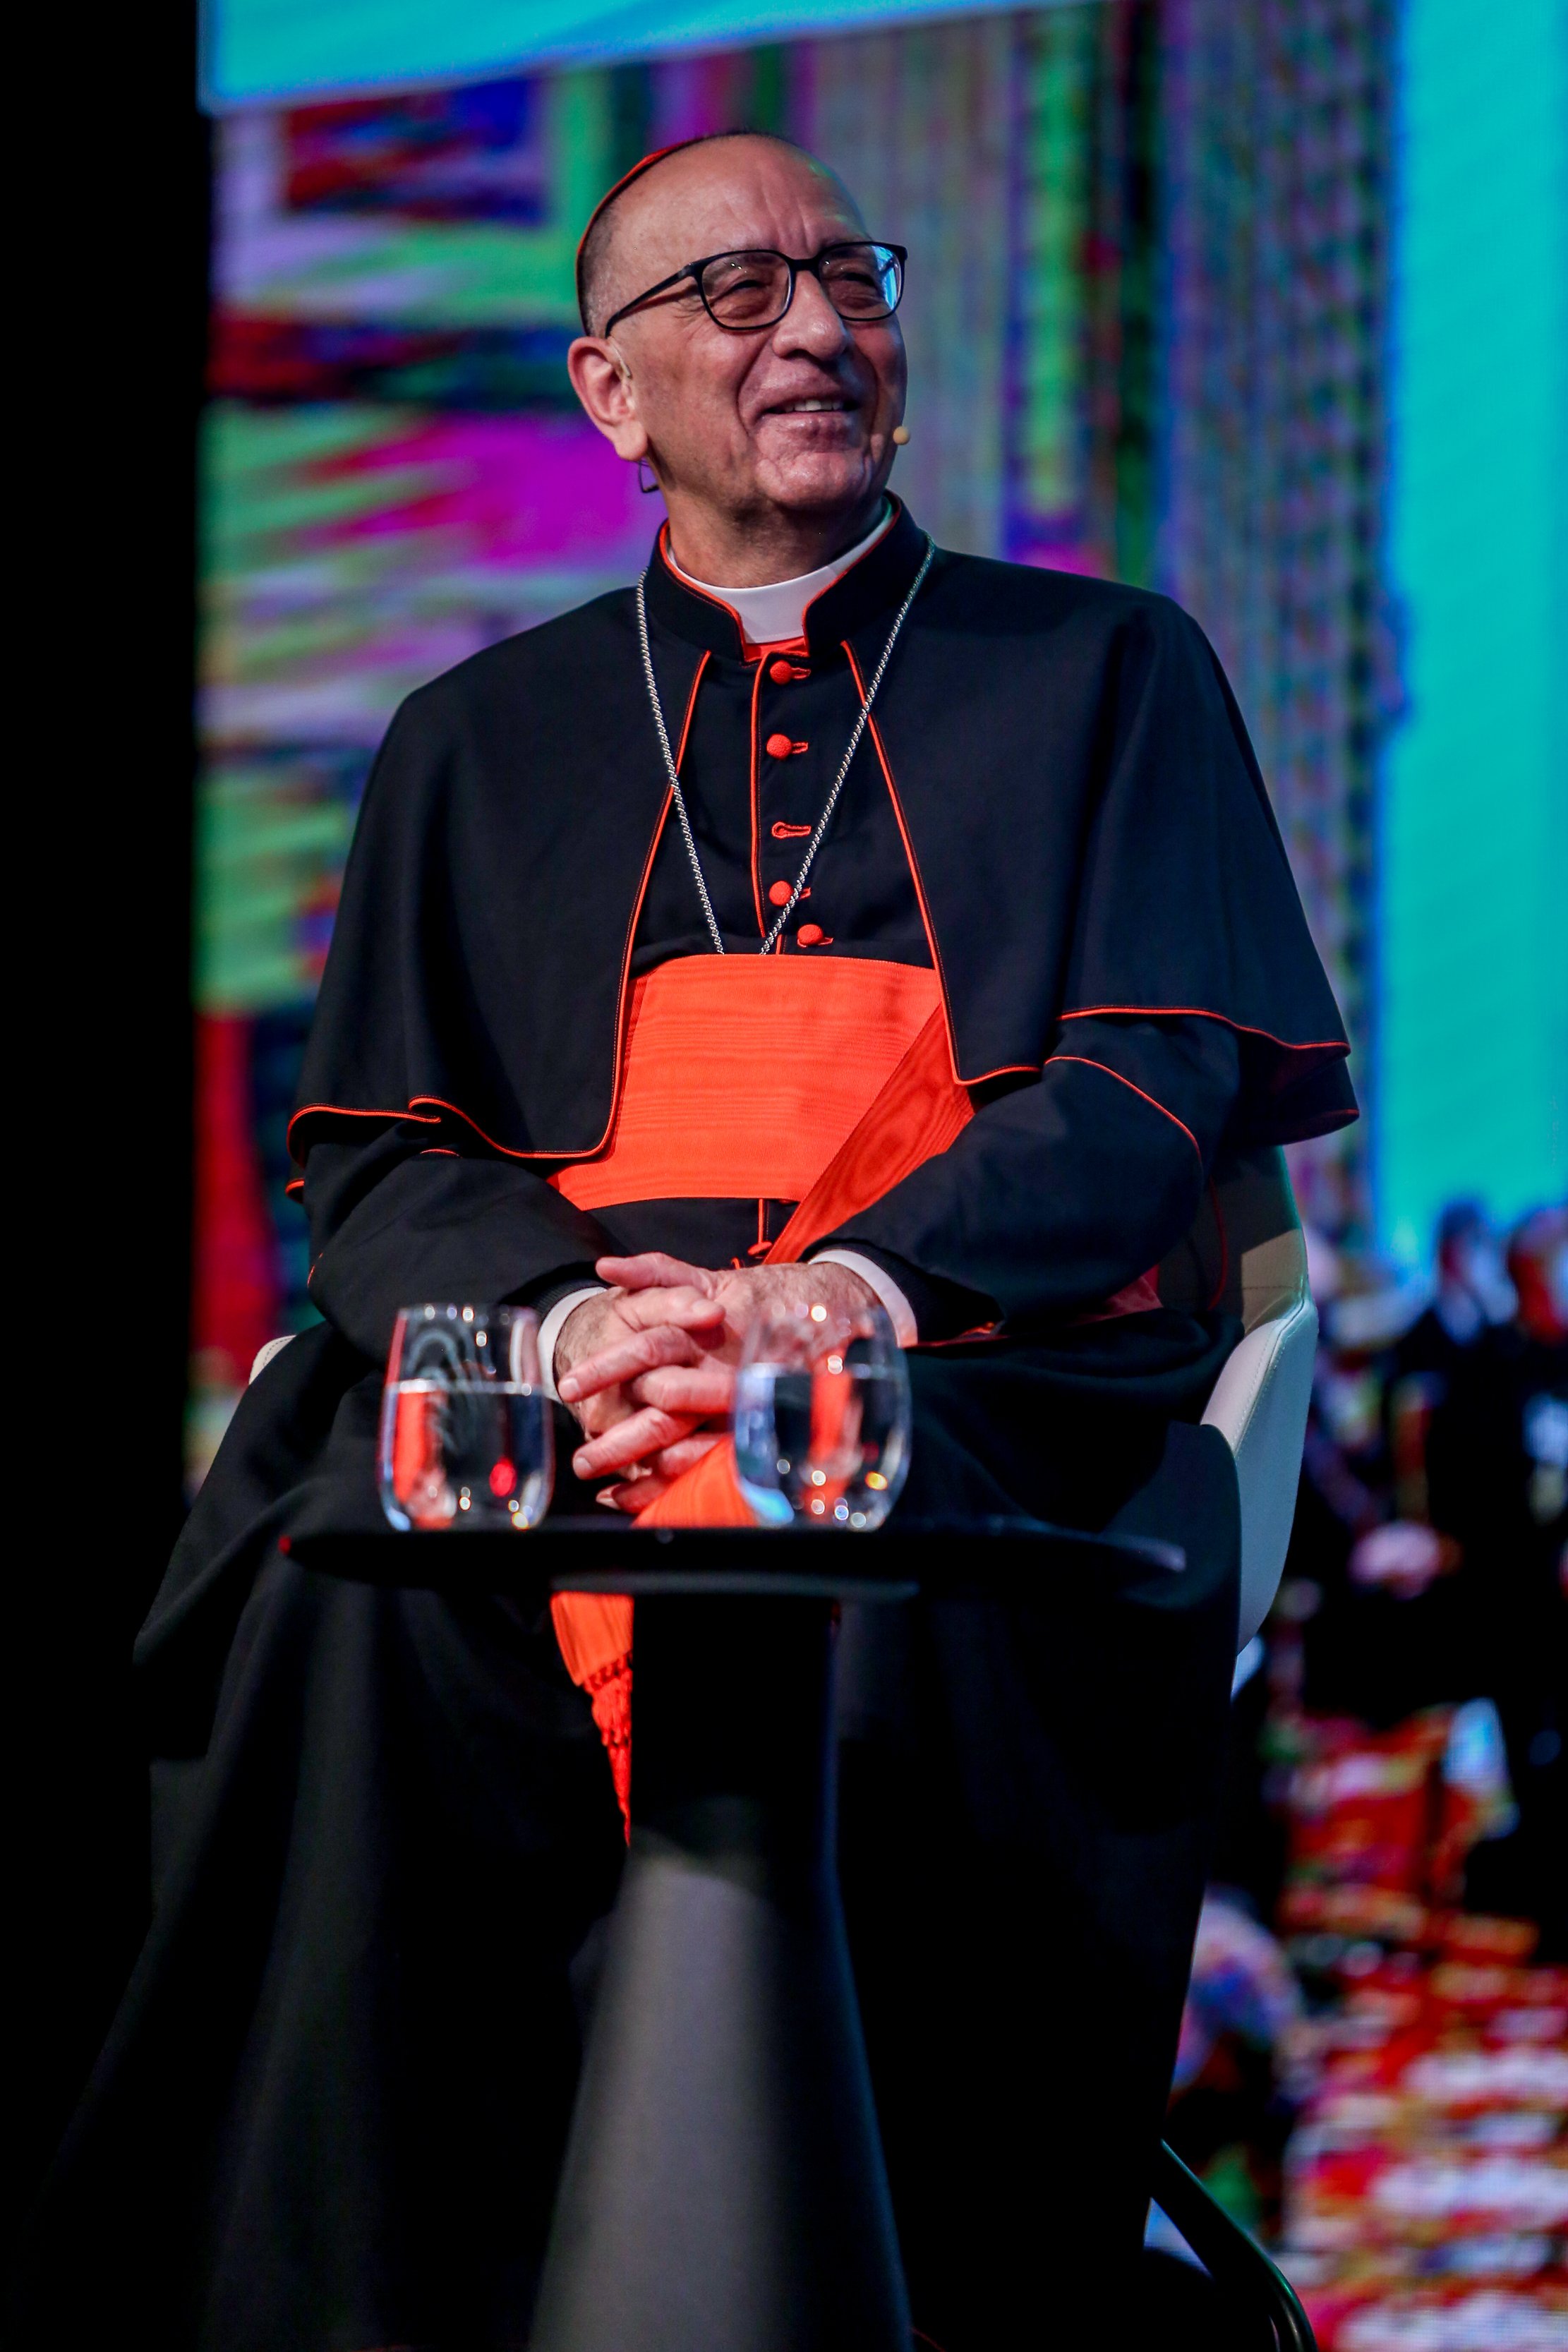 EuropaPress 4142965 cardenal presidente conferencia episcopal espanola juan jose omella reunion